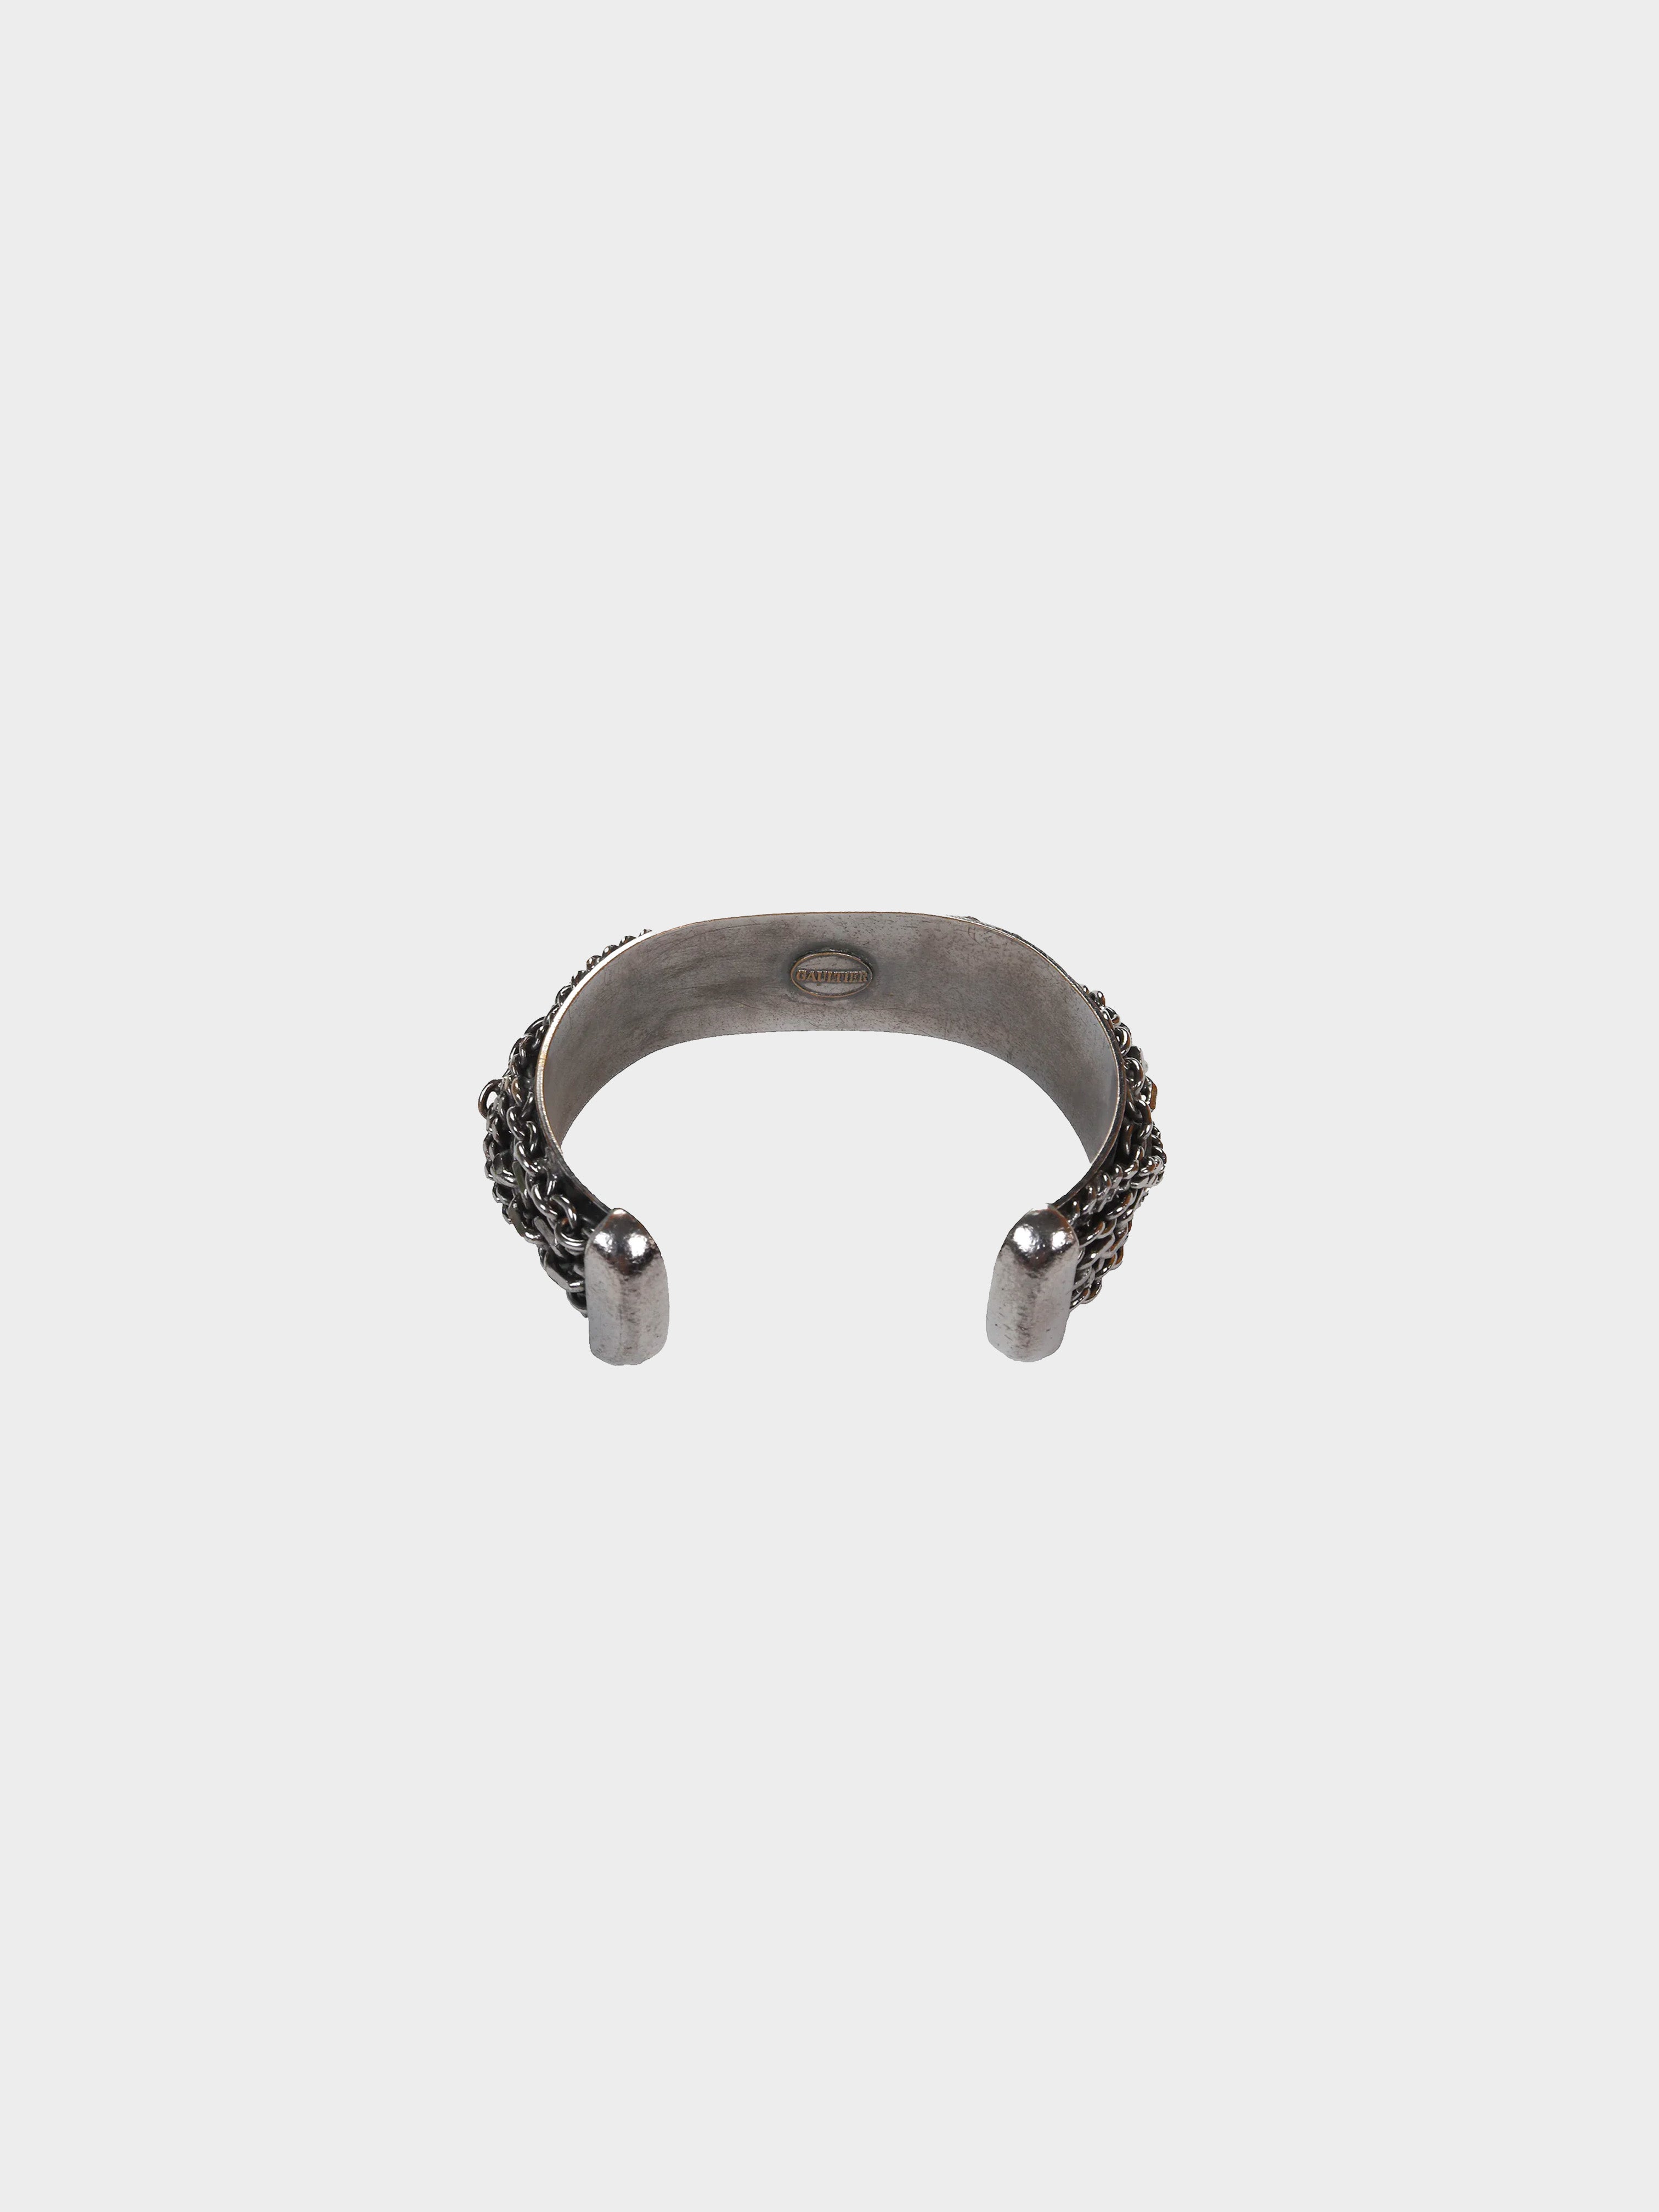 Jean Paul Gaultier 1990s Silver Chain Bracelet · INTO